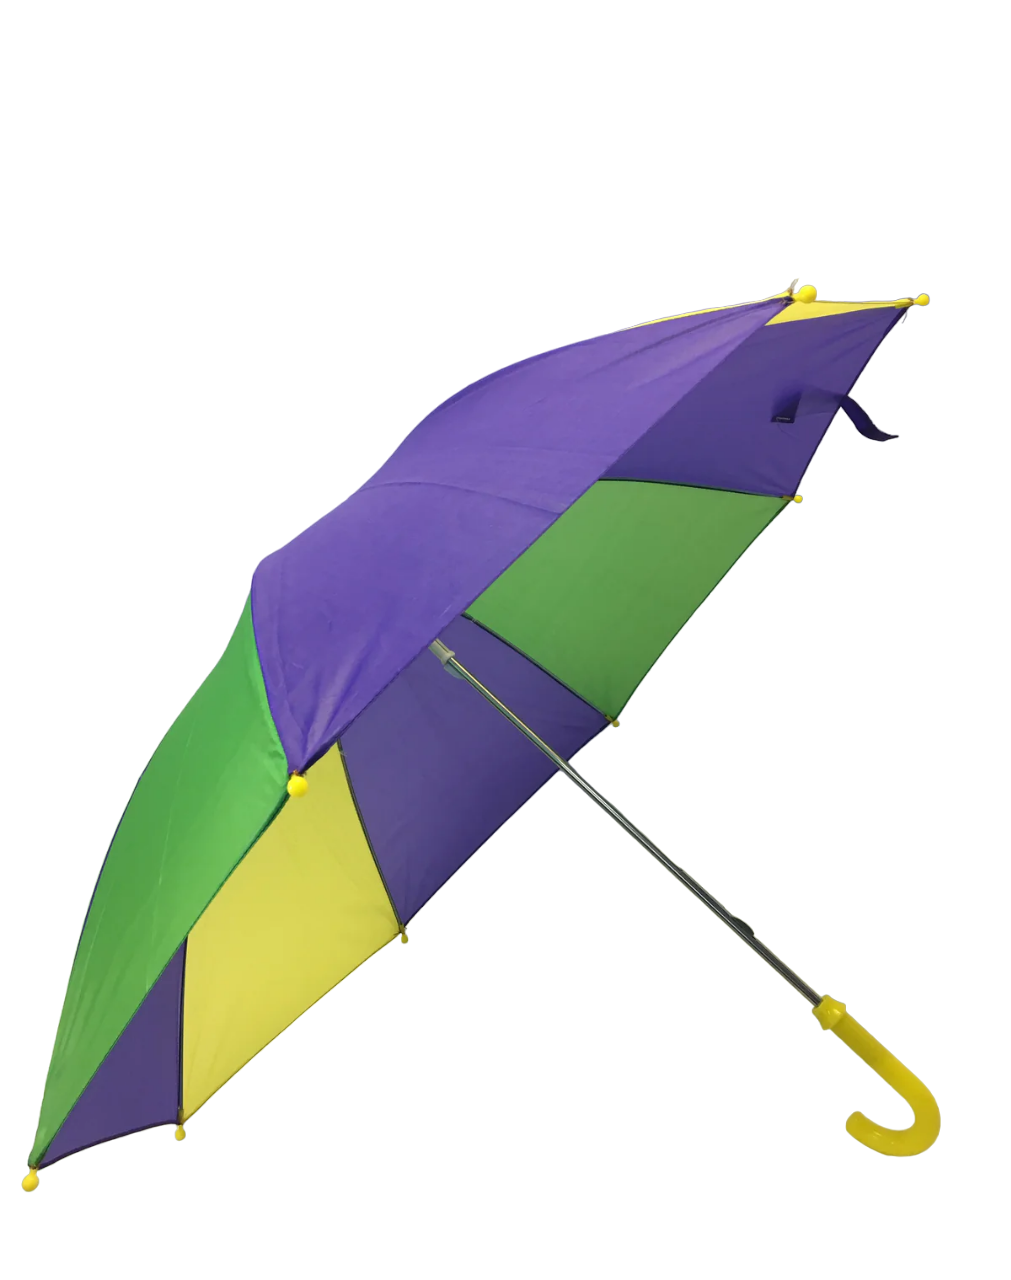 19" Purple, Green, and Gold Umbrella